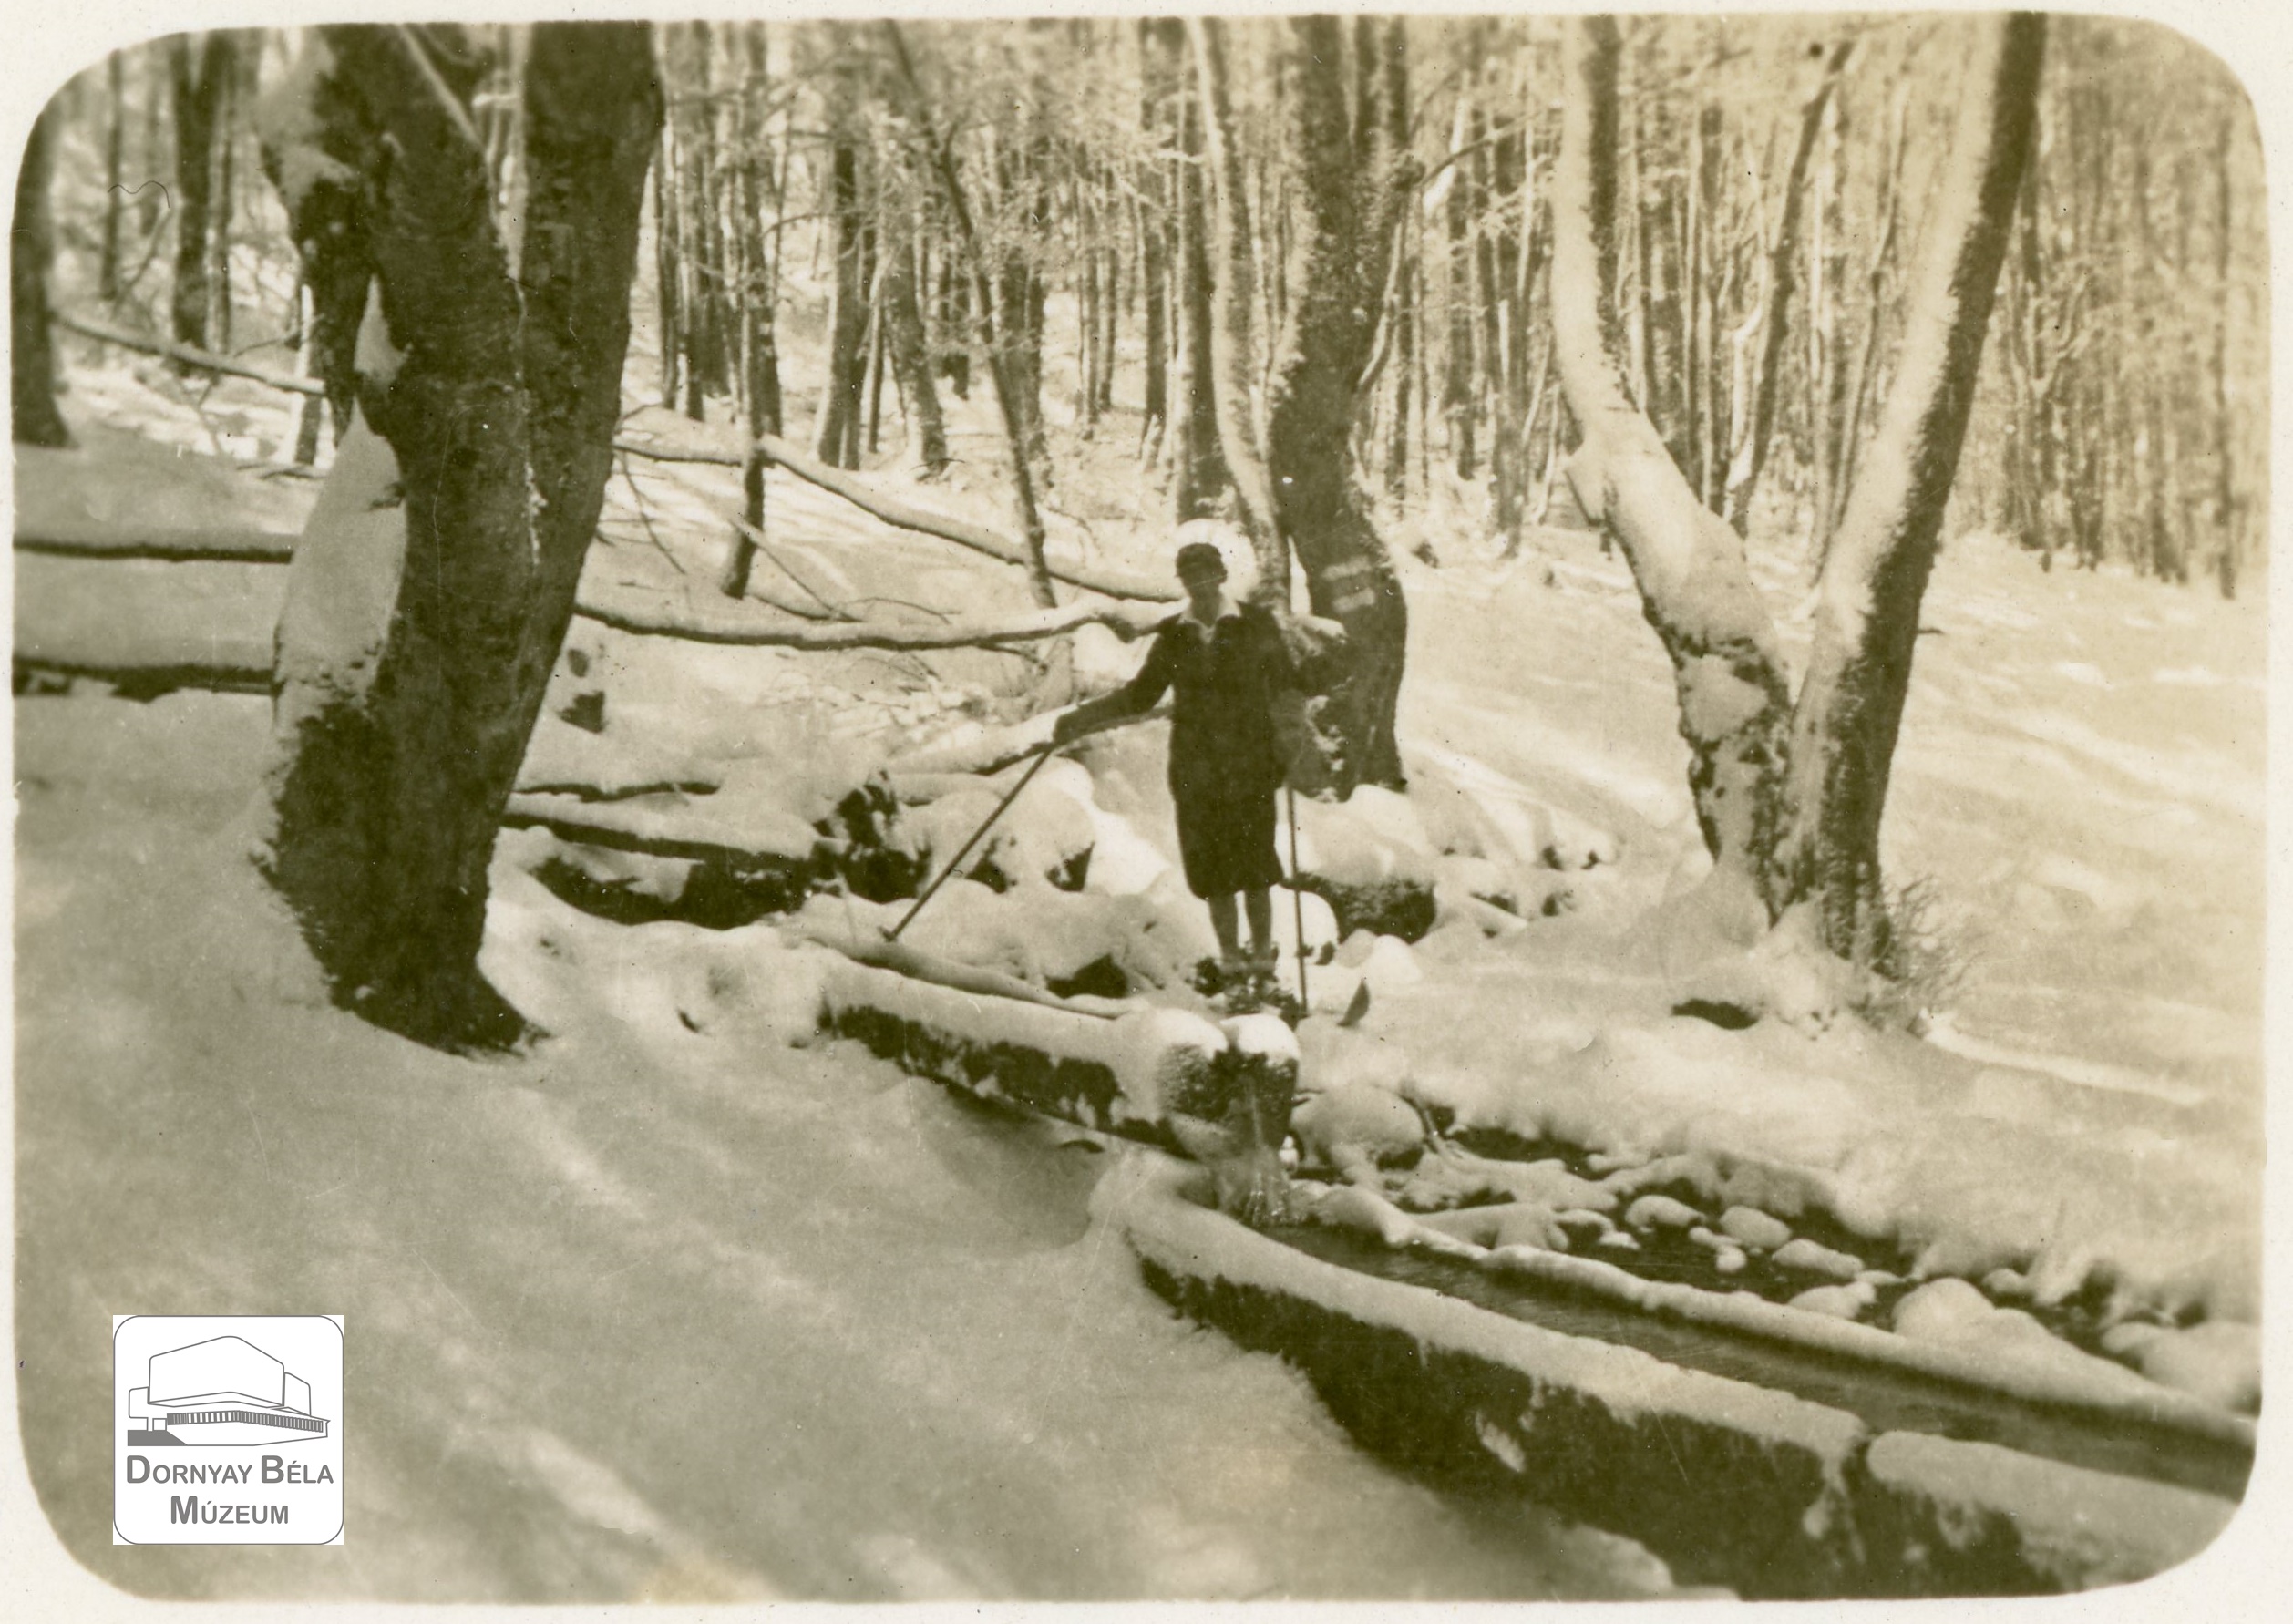 Téli erdő, forrás, mellette egy turista alakja túrabotokkal.  Dr. Dornyay Béla gyűjteményéből. (Dornyay Béla Múzeum, Salgótarján CC BY-NC-SA)